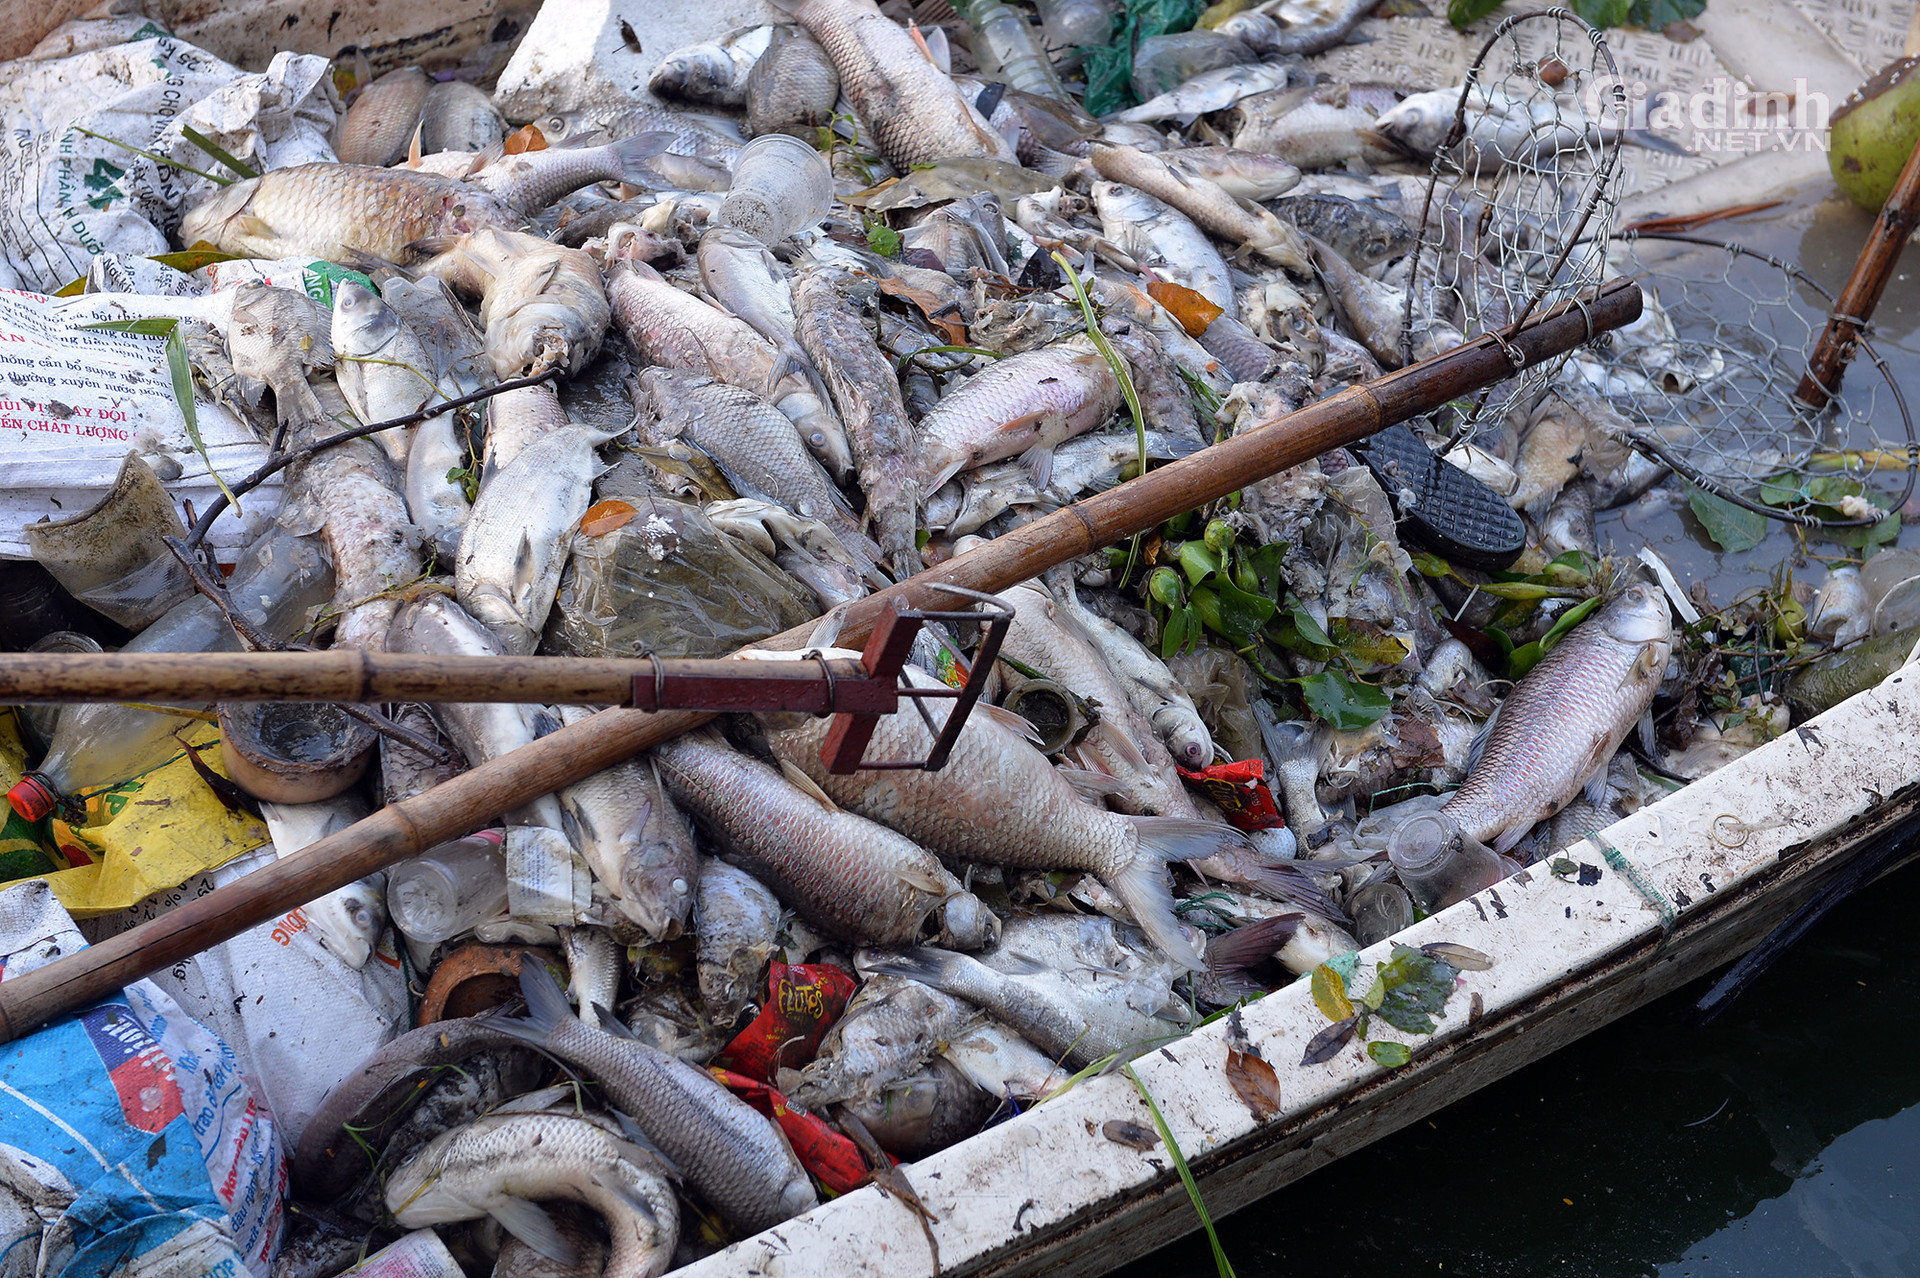 Hà Nội: Cá chết trắng ở Hồ Tây, cư dân chịu mùi hôi thối hơn 1 tuần qua - Ảnh 3.